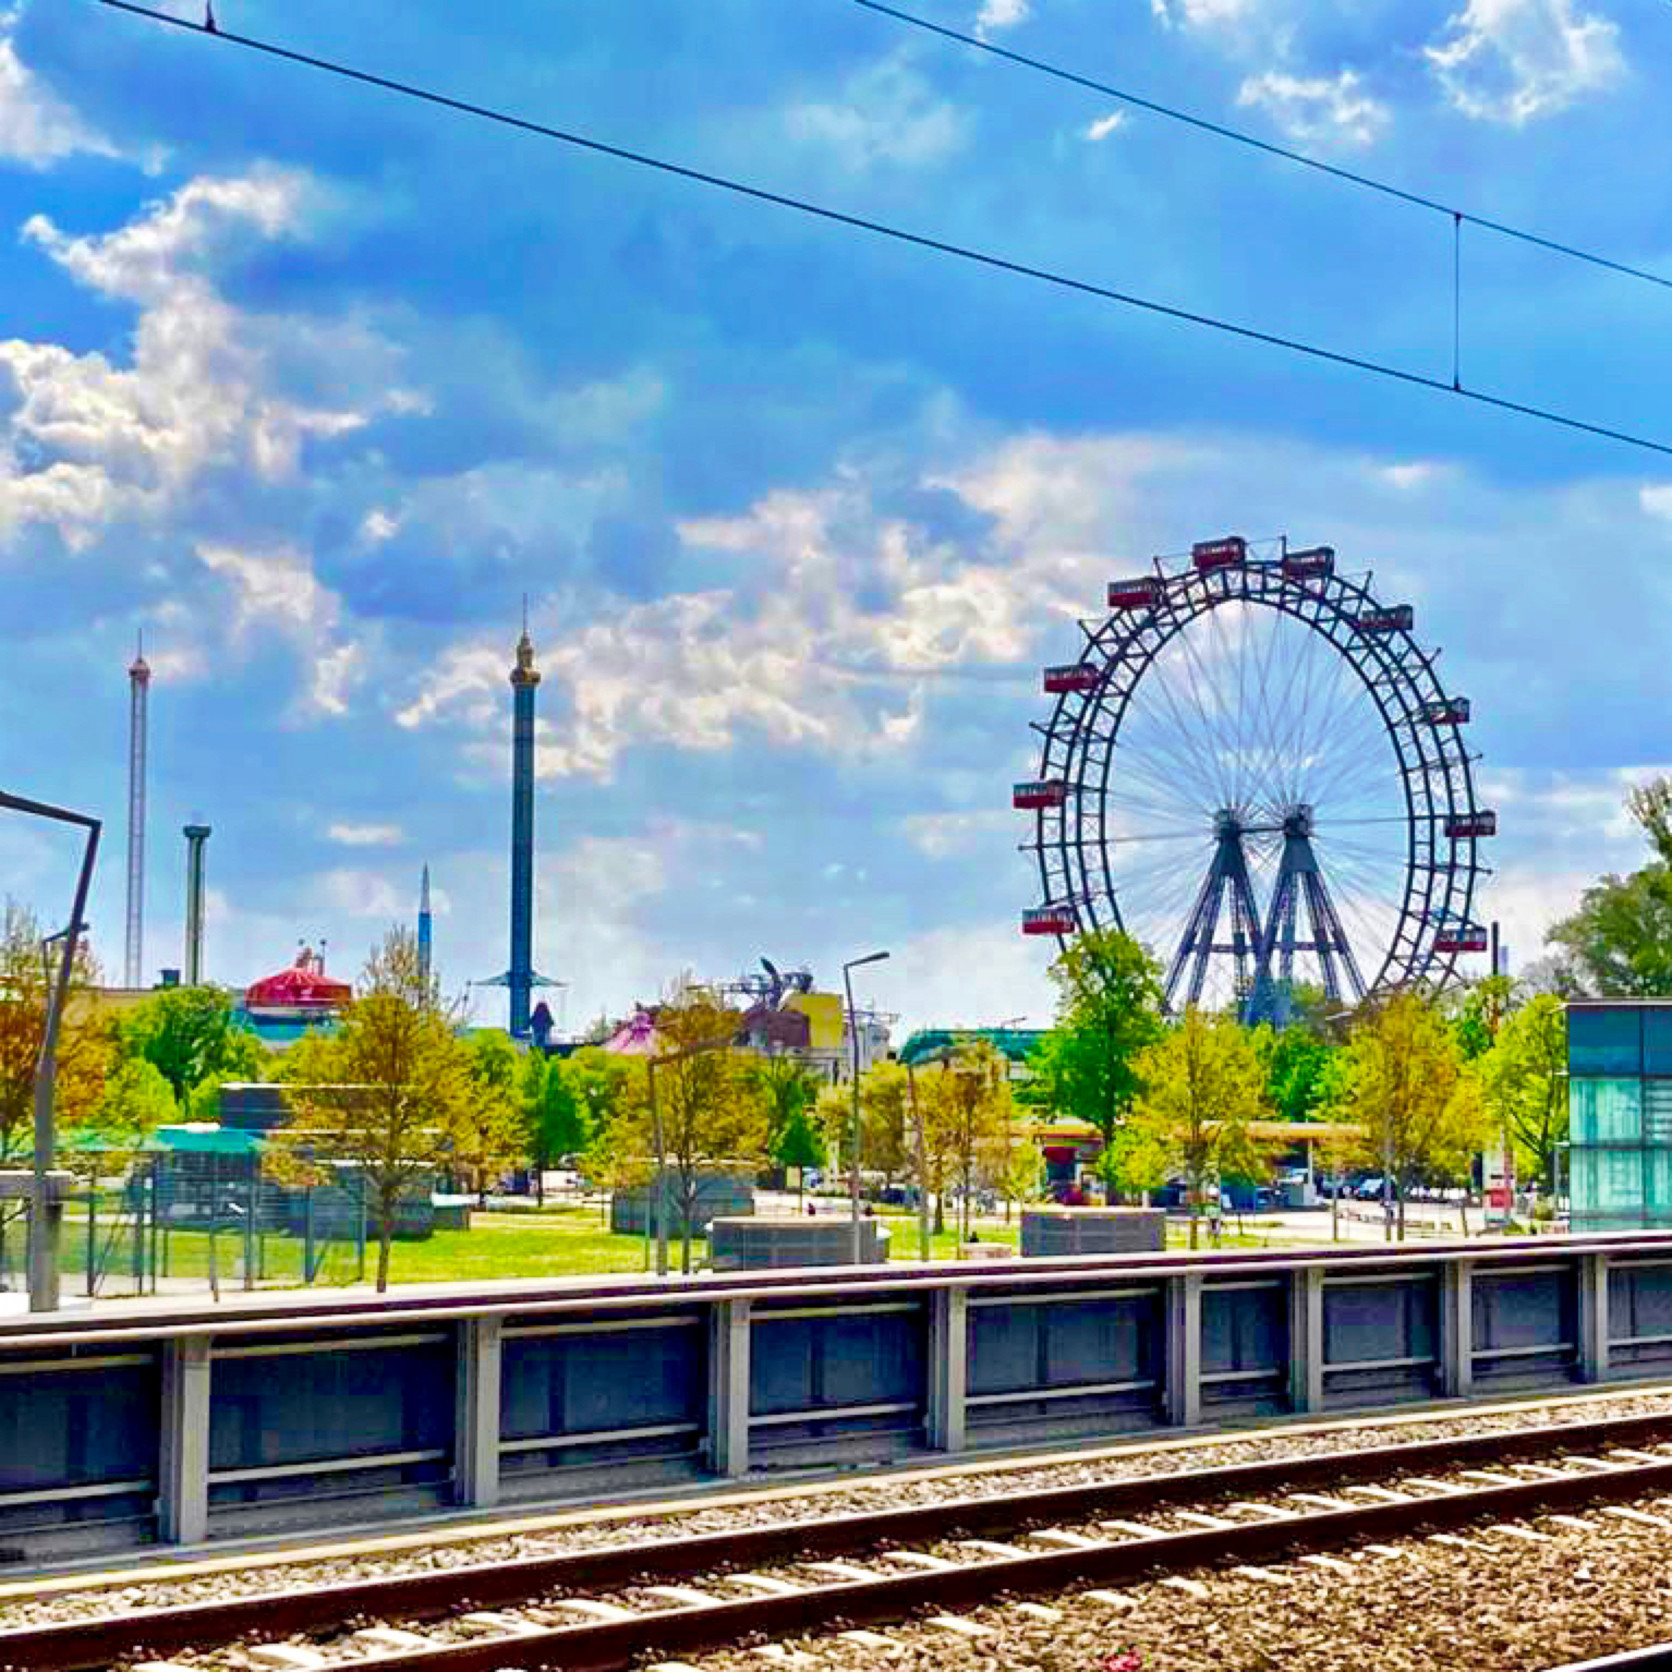 Das Riesenrad in Wien Bild: @gerharddeutsch1 via Twenty20